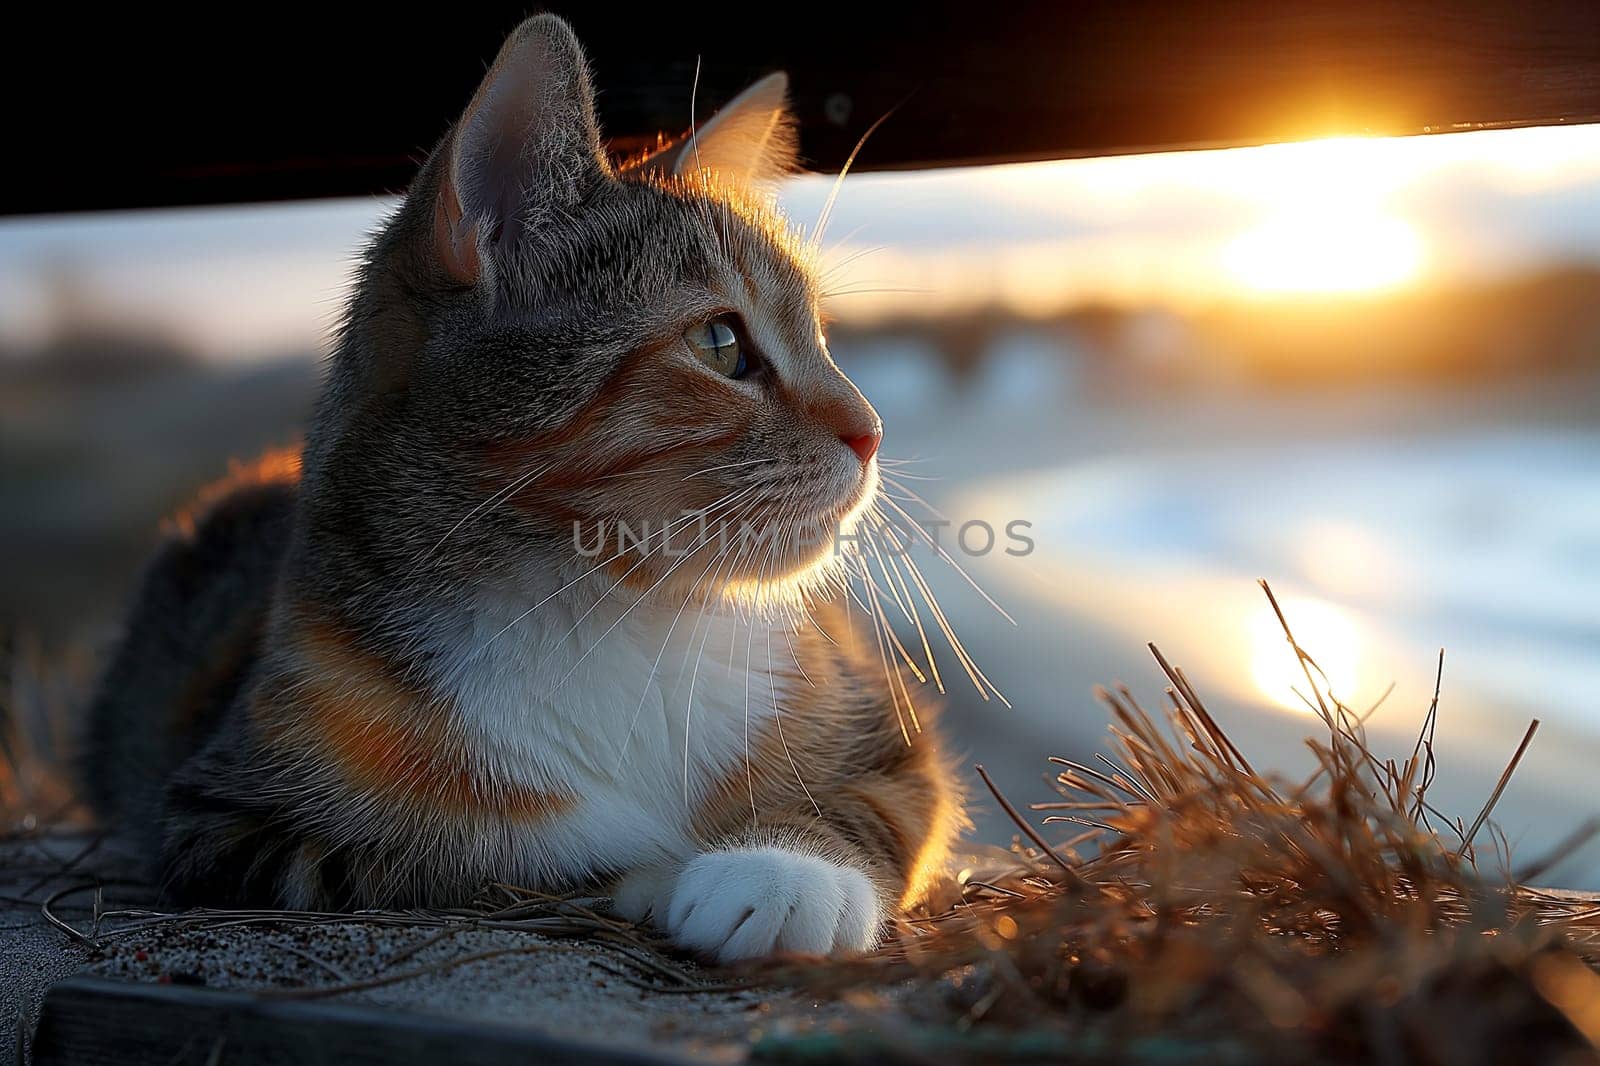 A cat on a tropical beach on sunny day